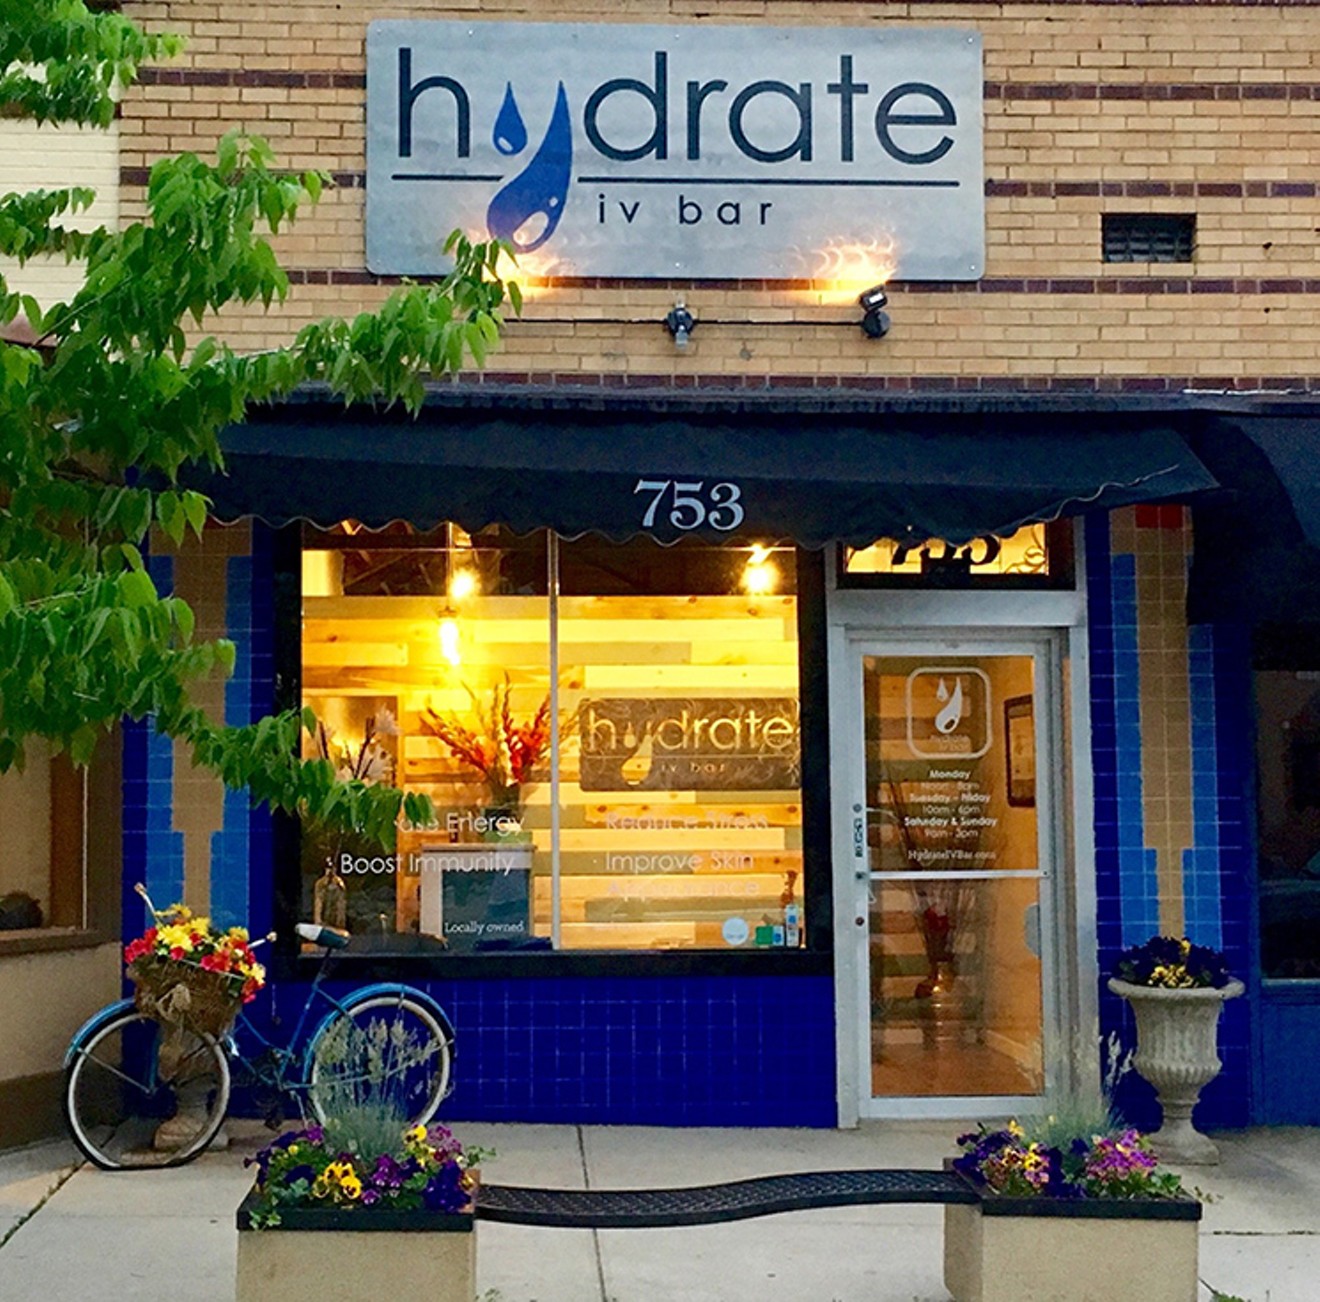 Hydrate IV Bar's flagship location in Bonnie Brae.